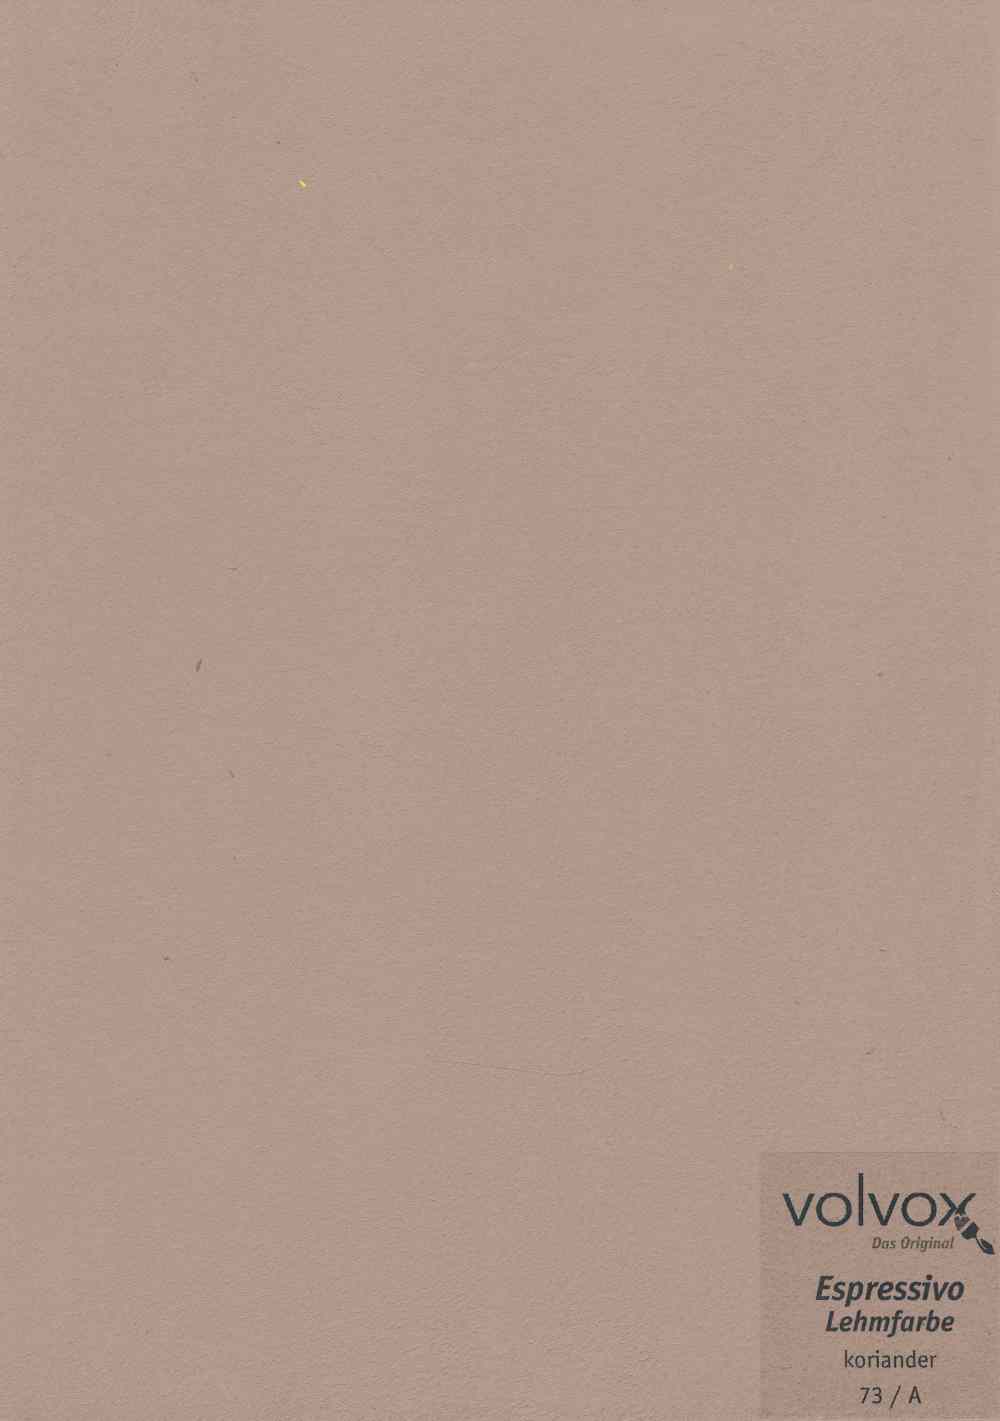 Volvox Espressivo Lehmfarbe 073 koriander · 10ltr. 